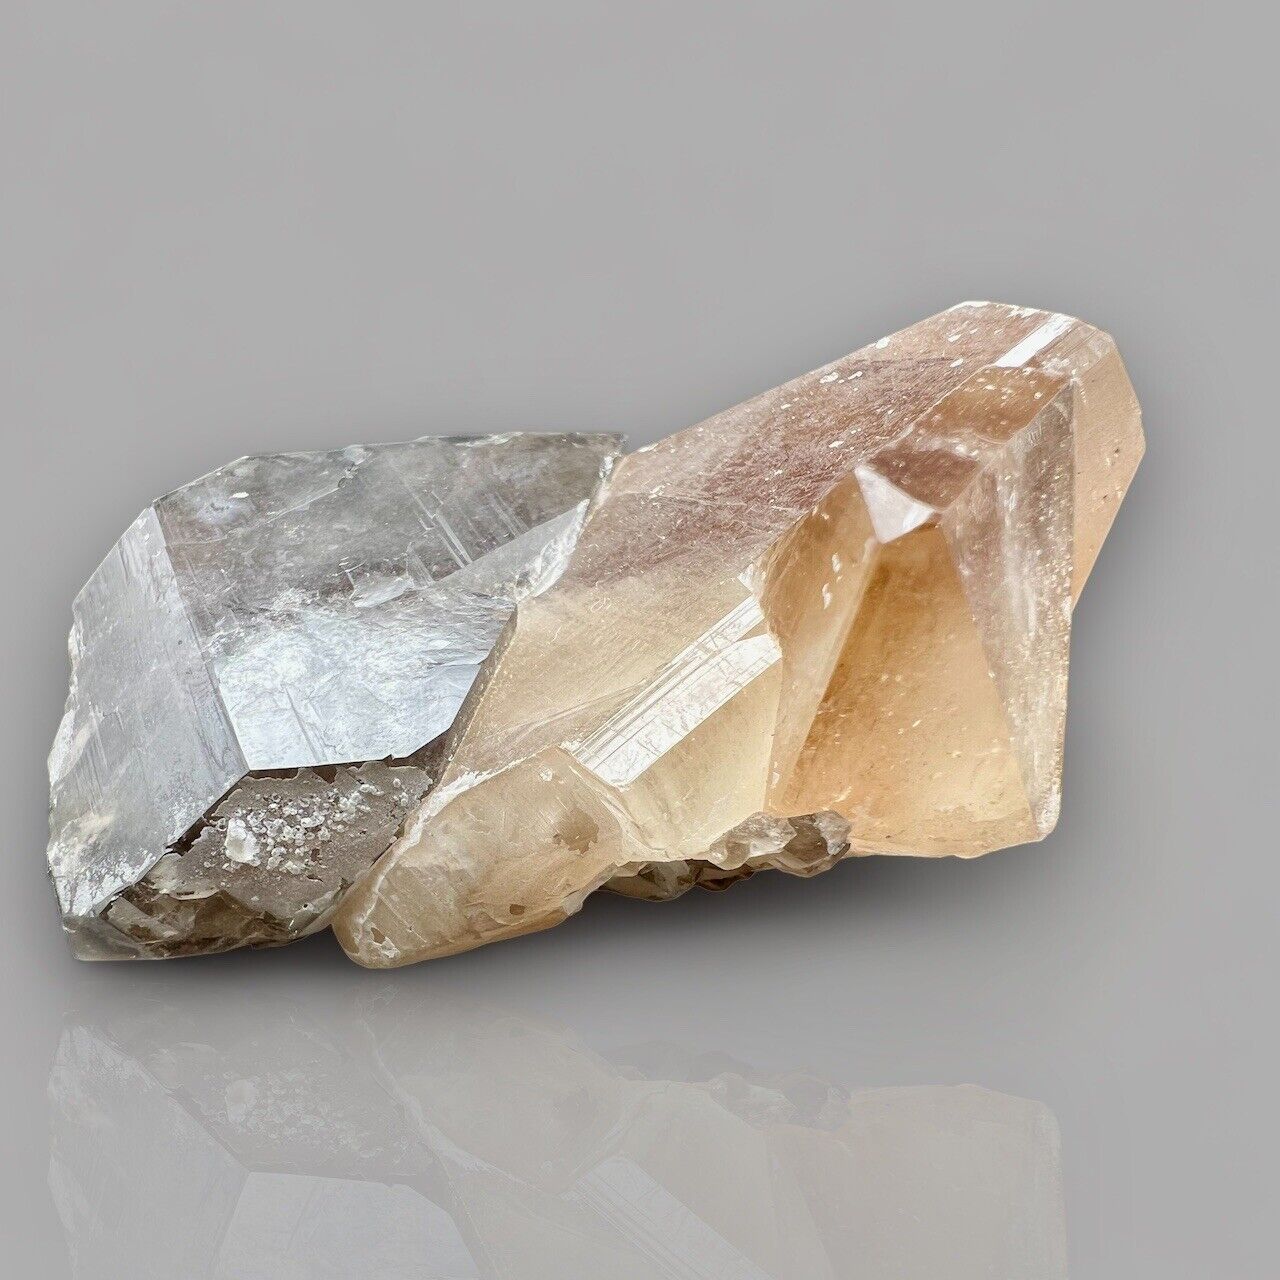 Amazing Twice Terminated Topaz Crystal Have Smoky Quartz Specimen From Pakistan